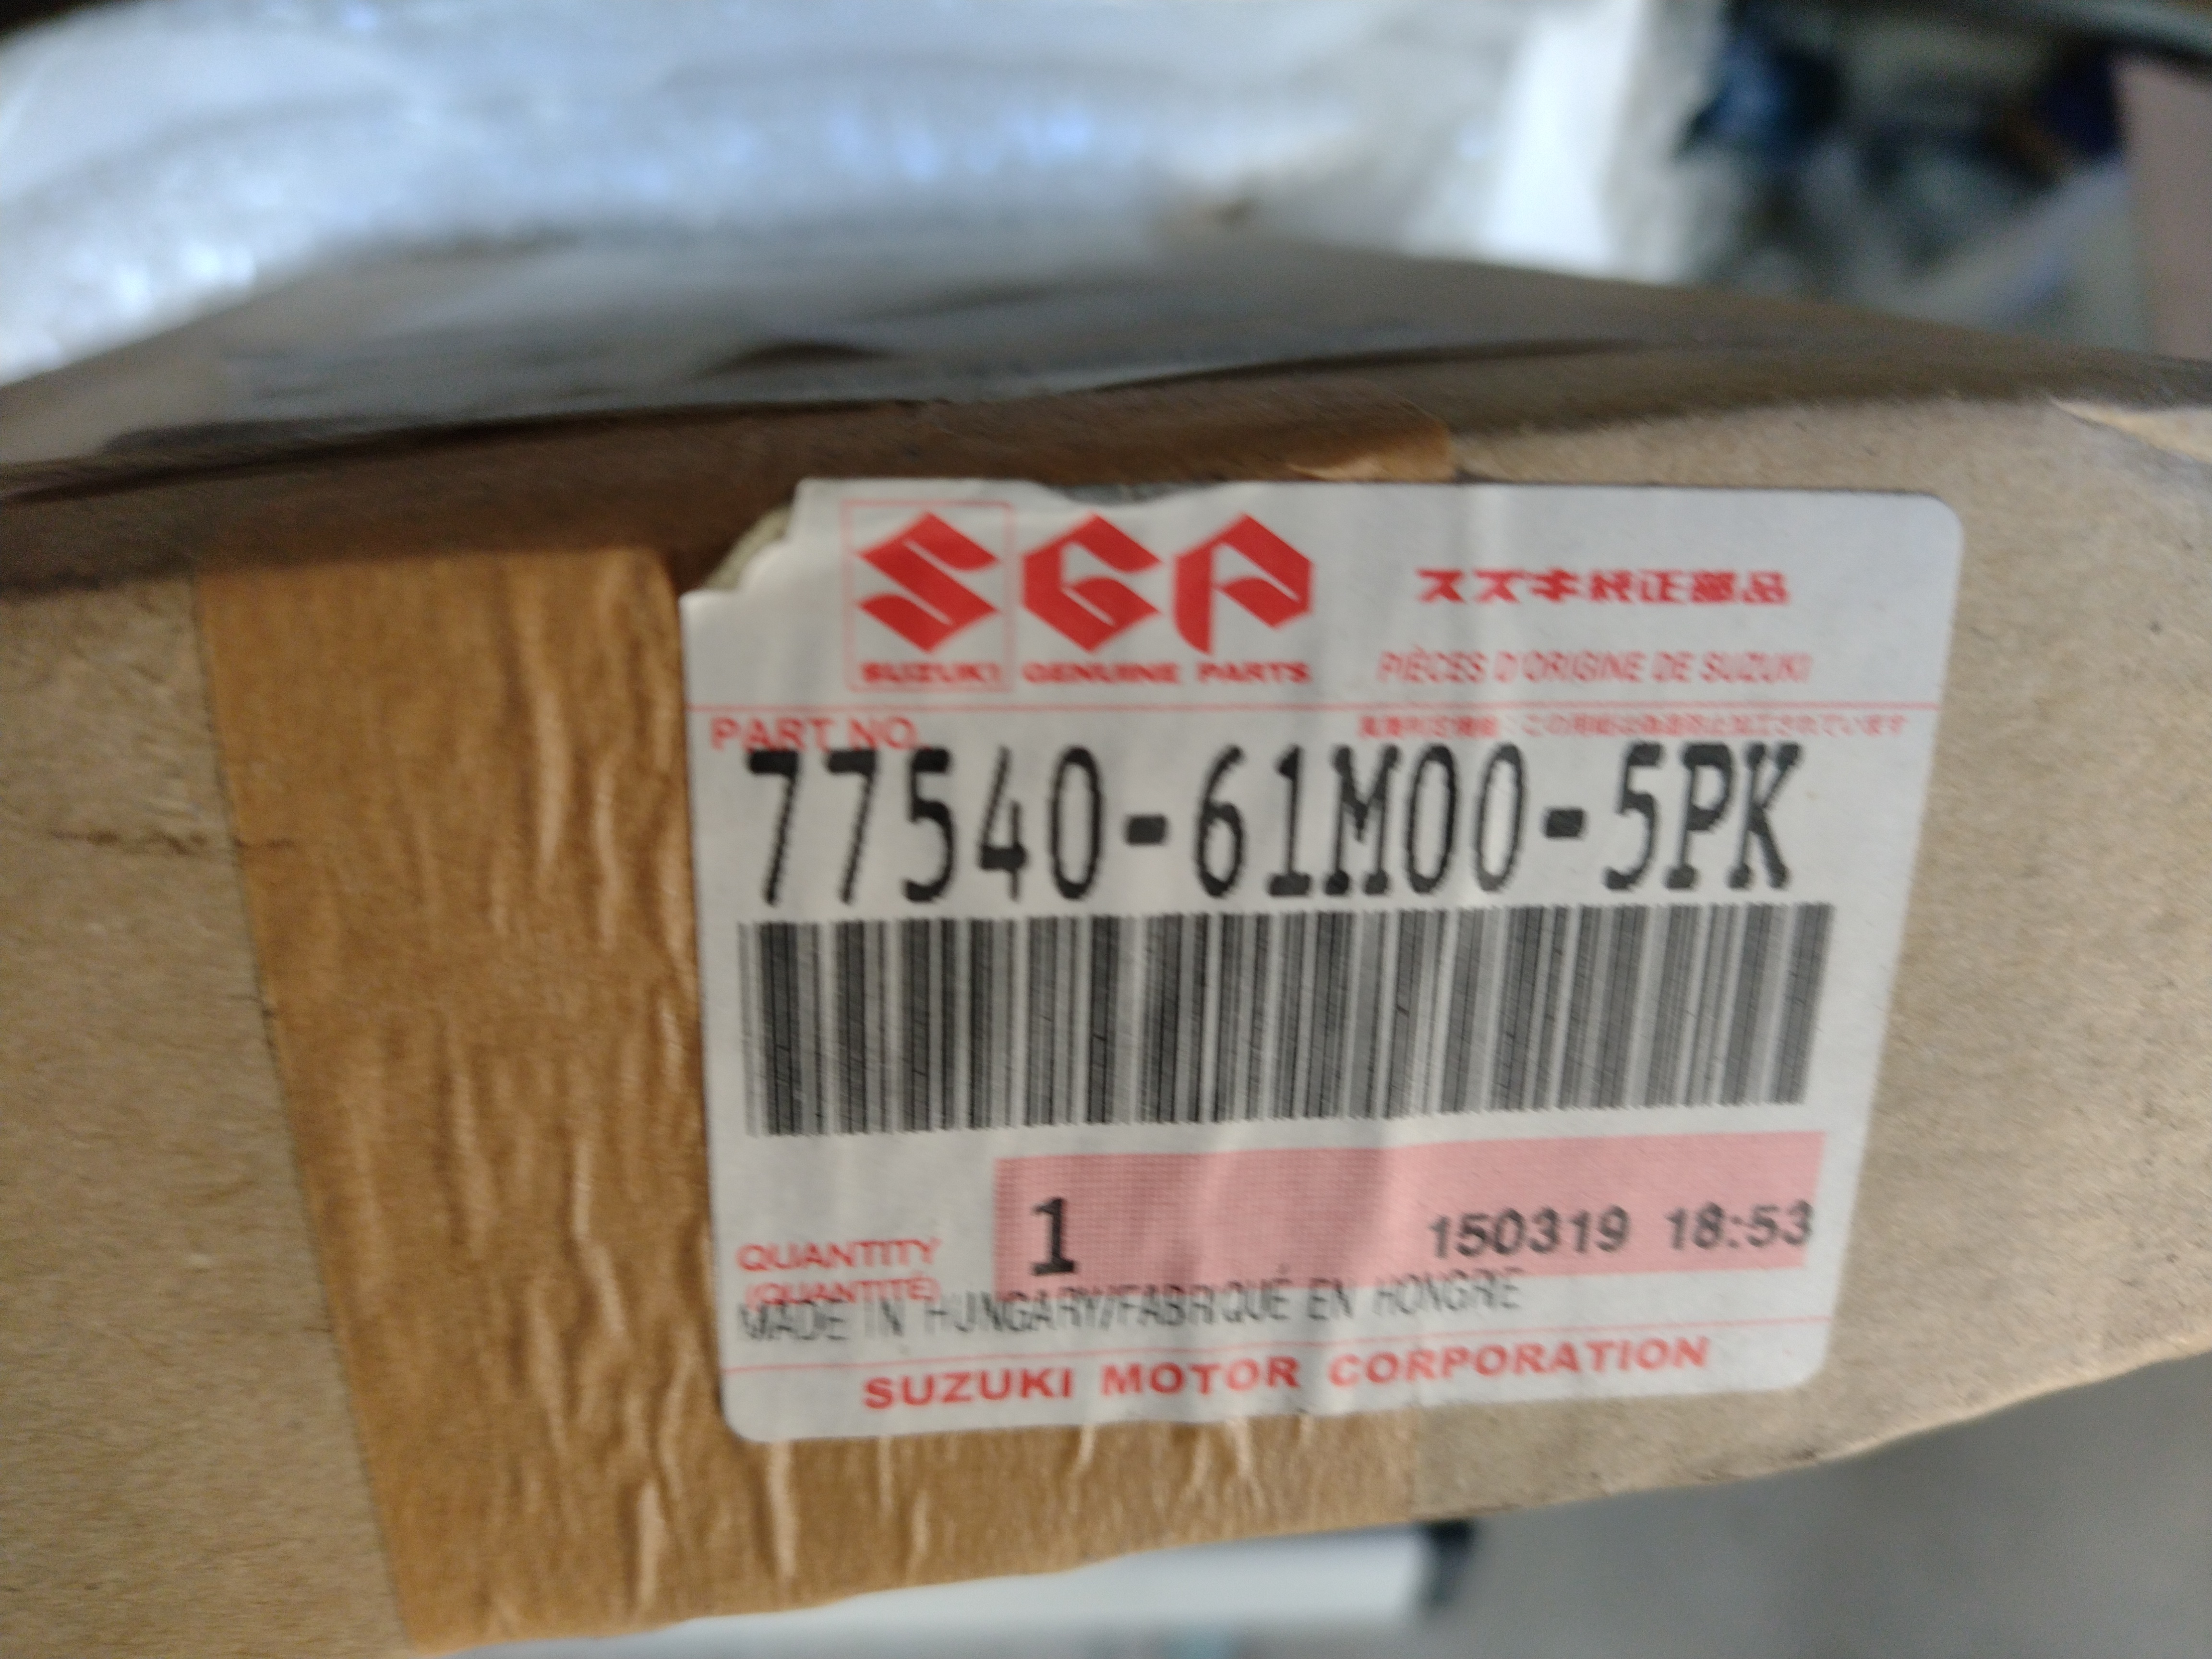 Suzuki SX4 S-Cross Zierleiste Tür HL 77540-61M00-5PK NEU NOS NEW